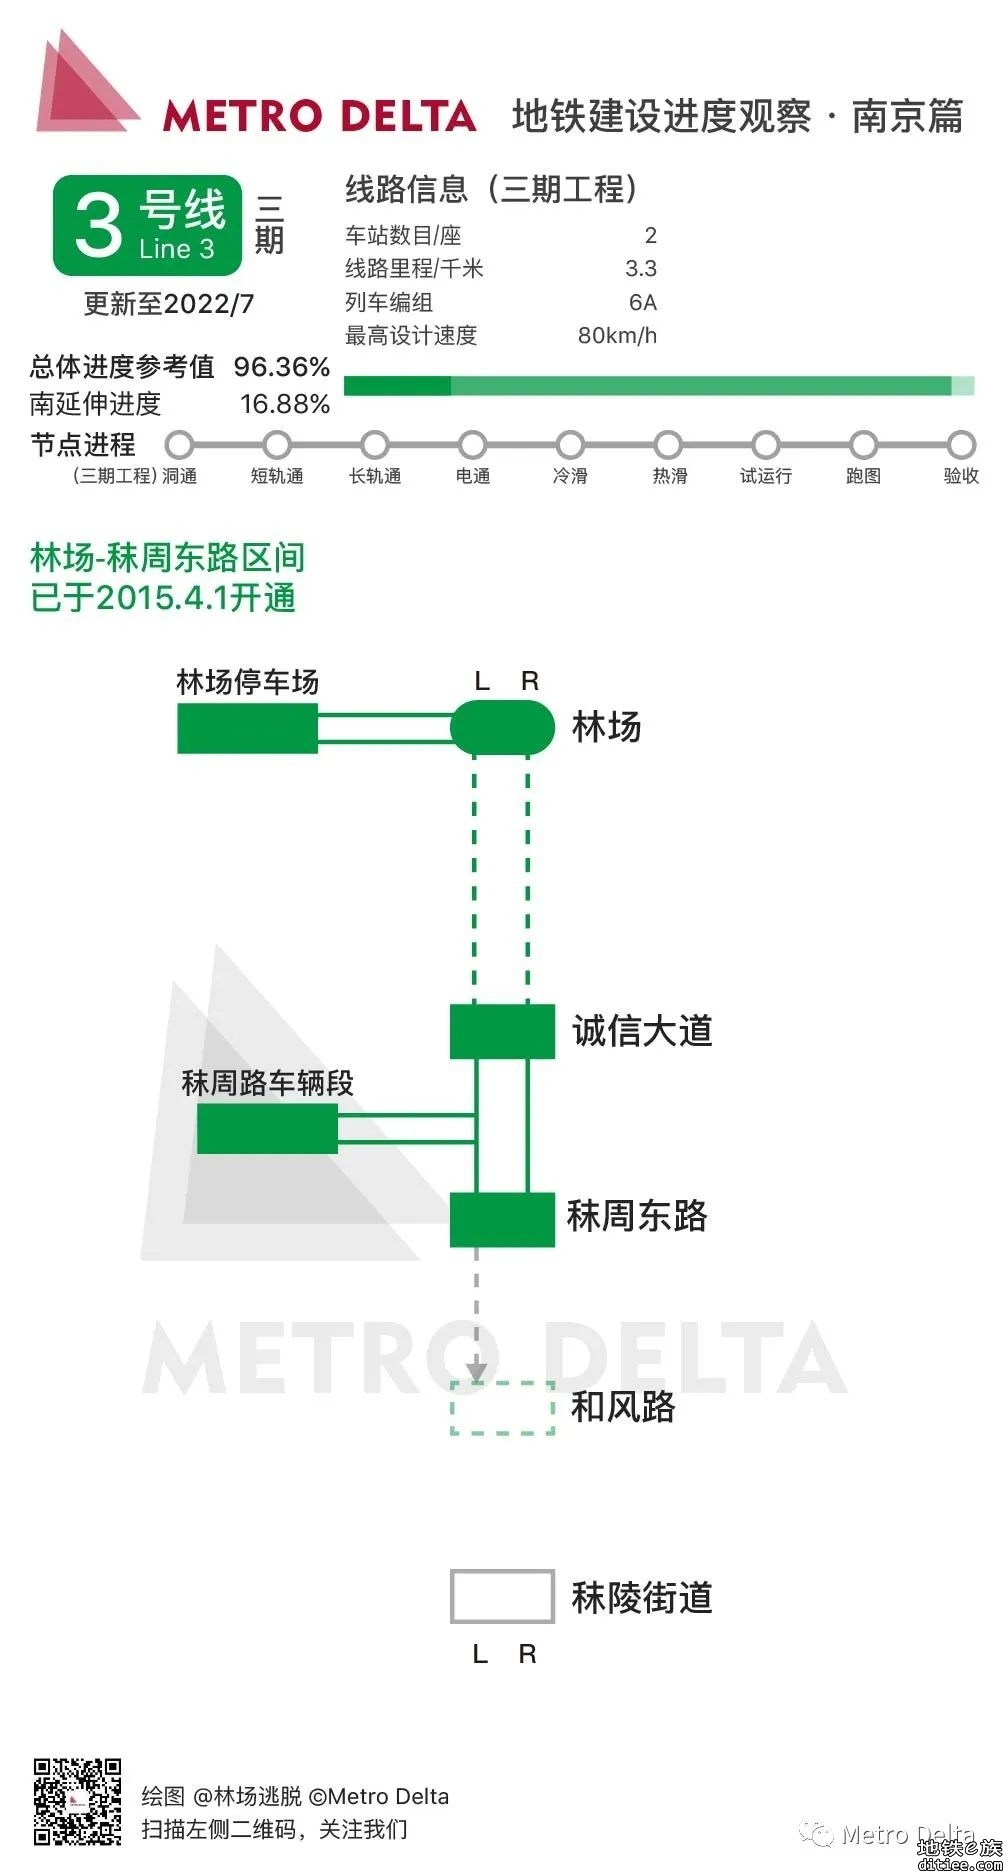 南京地铁线路6月建设进度图